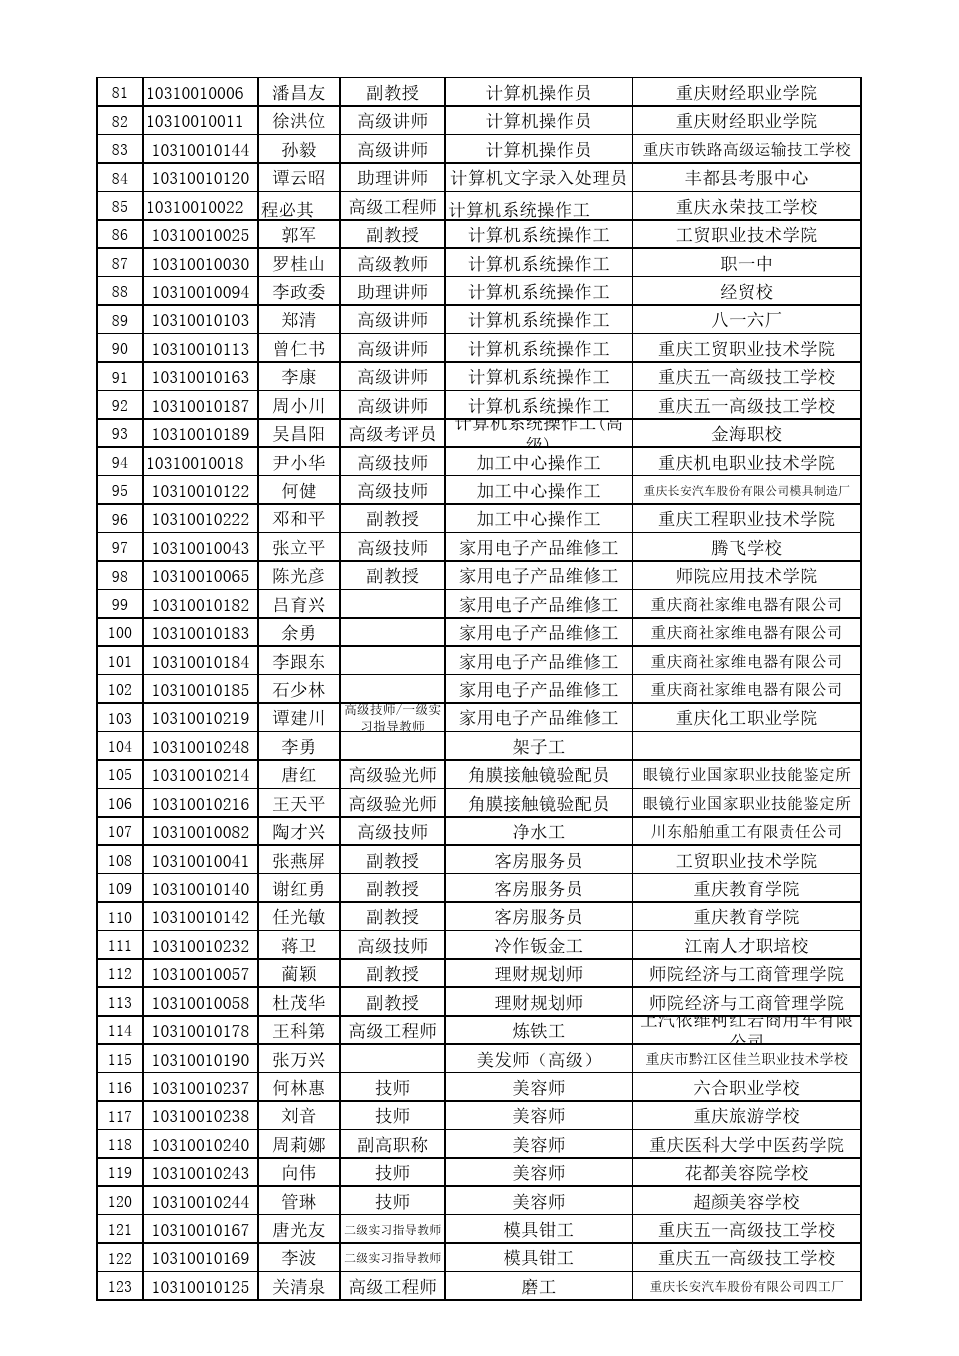 2010年重庆市职业技能鉴定考评员名册